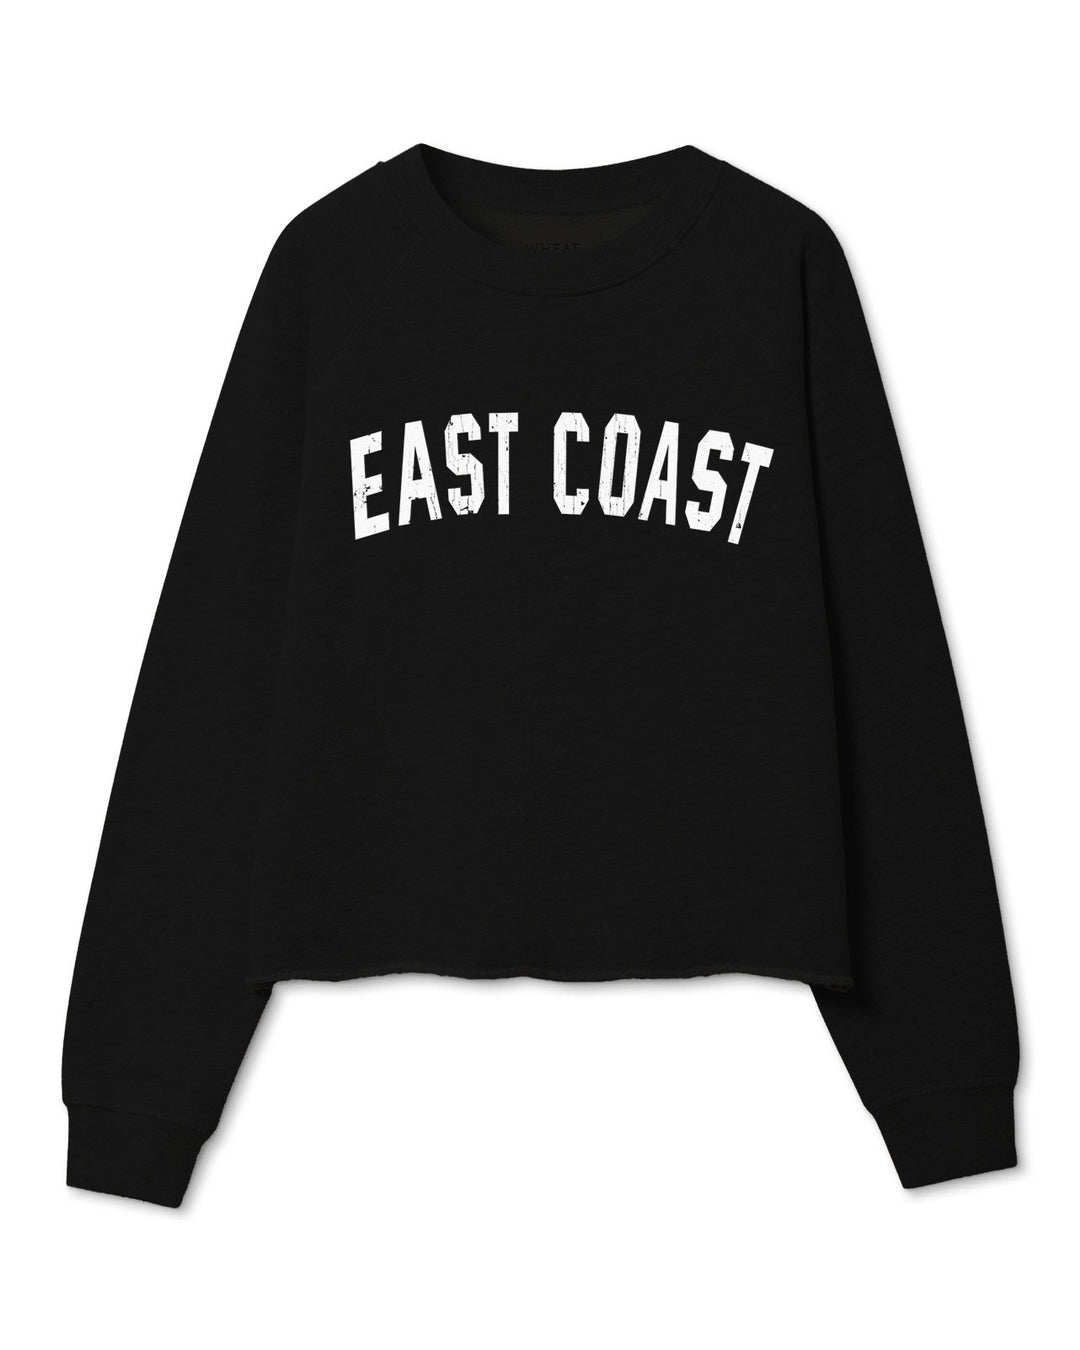 East Coast Cut Off Sweatshirt